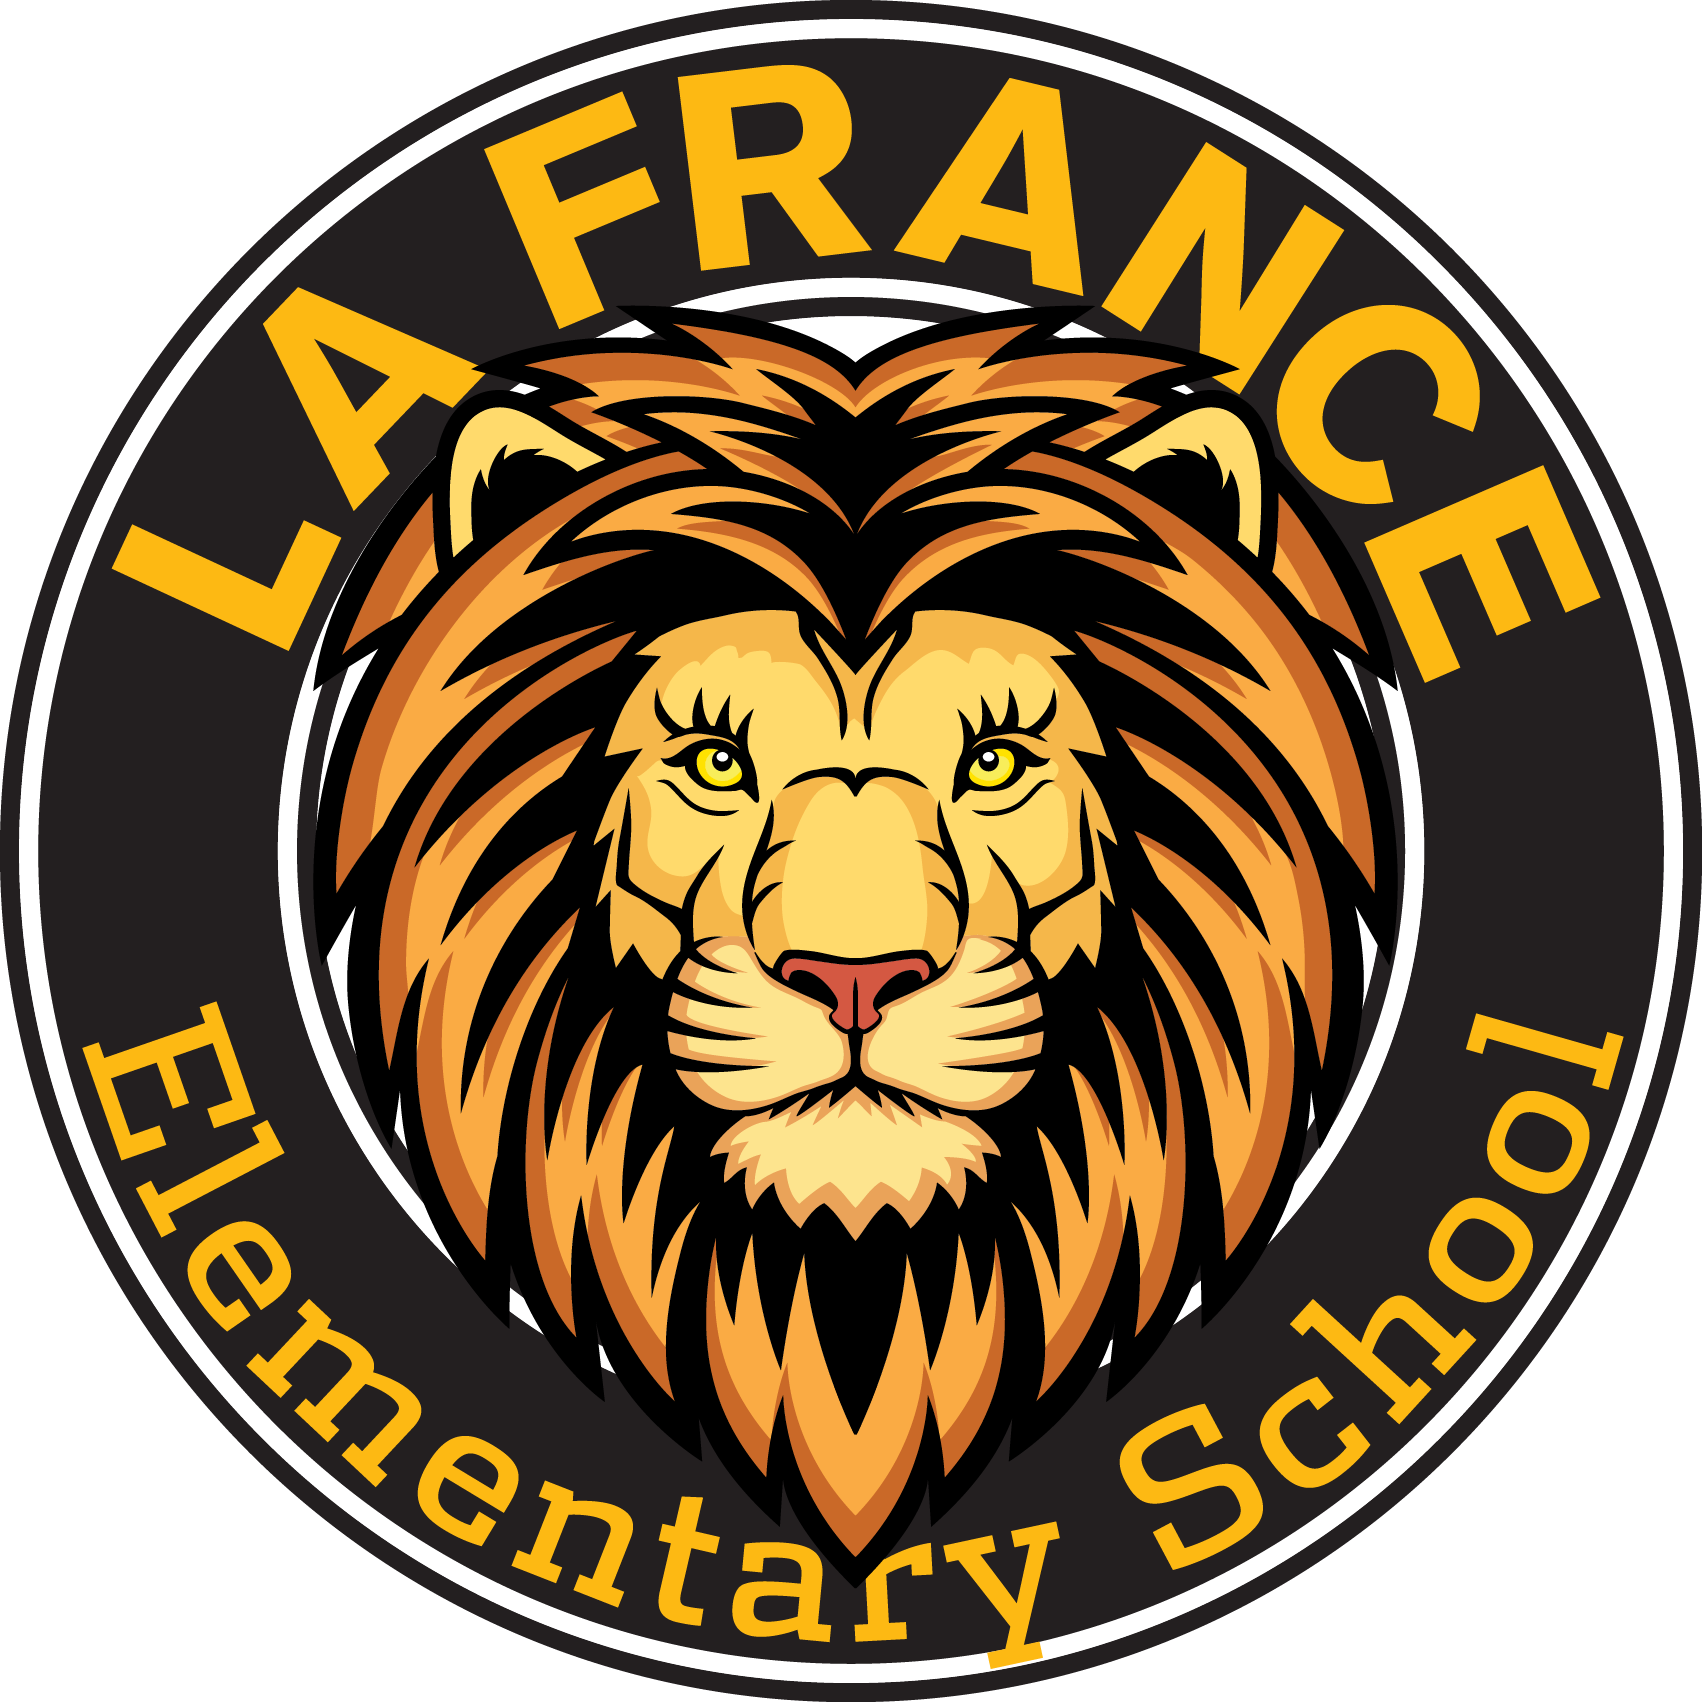 La France Elementary - Lafrance Elementary School (1702x1702)